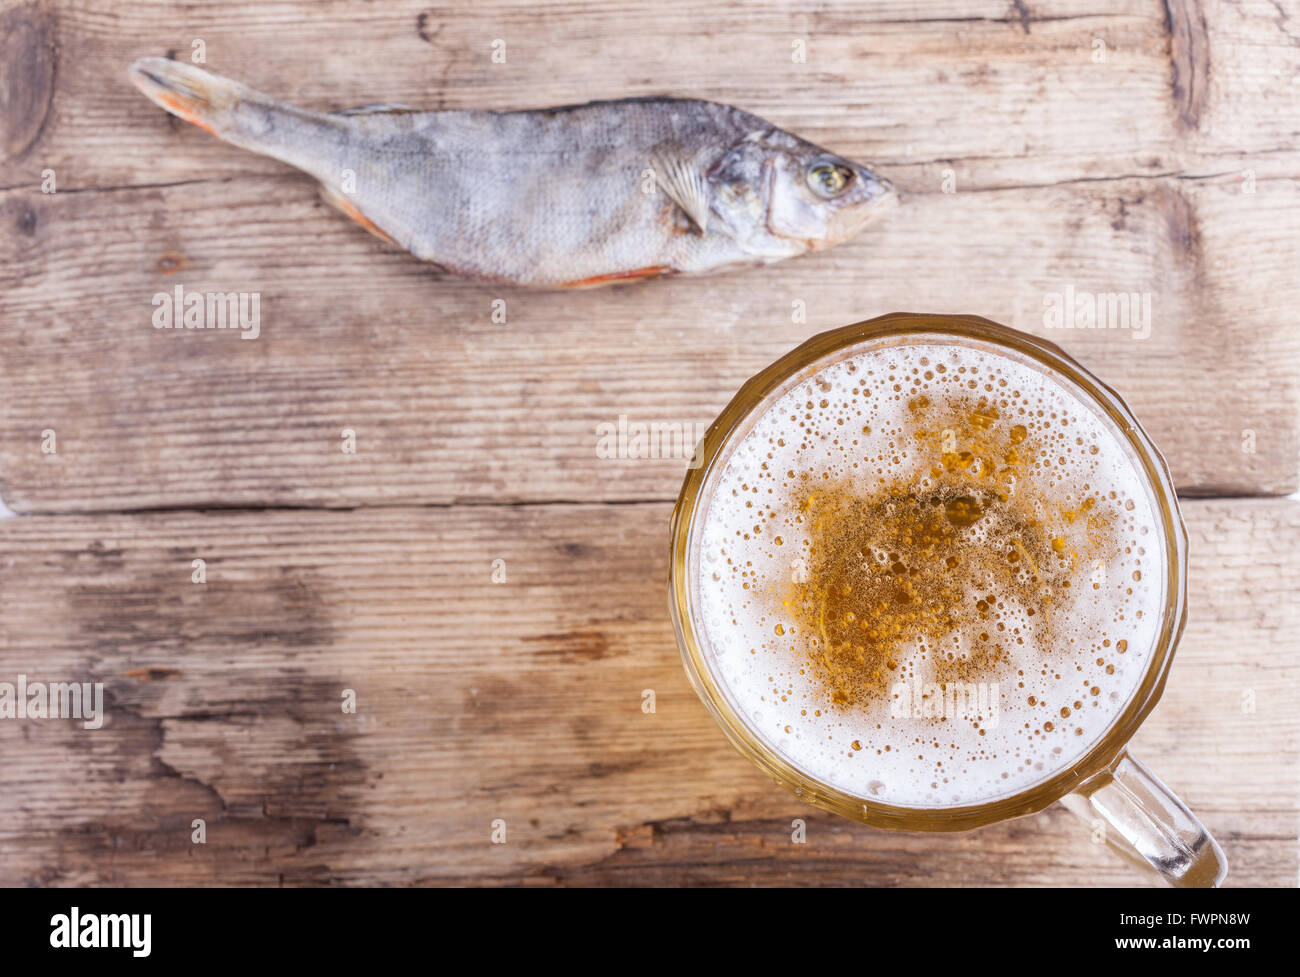 Cerveza y un pez en el fondo de la vista de la mesa de madera Foto de stock